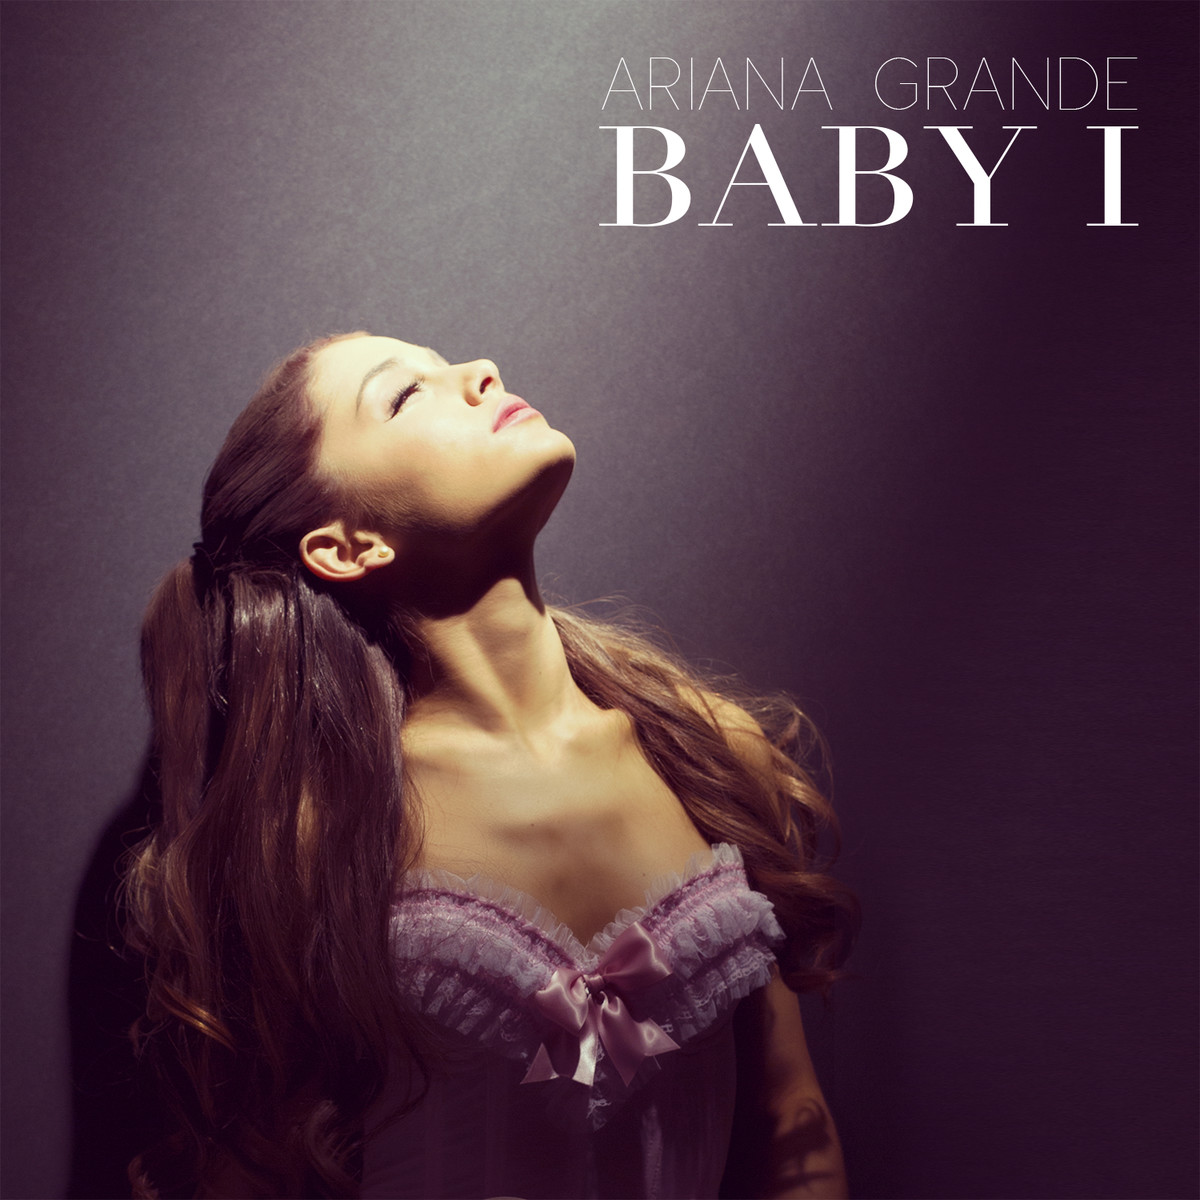 Baby I | Ariana Grande Wiki | FANDOM powered by Wikia1200 x 1200